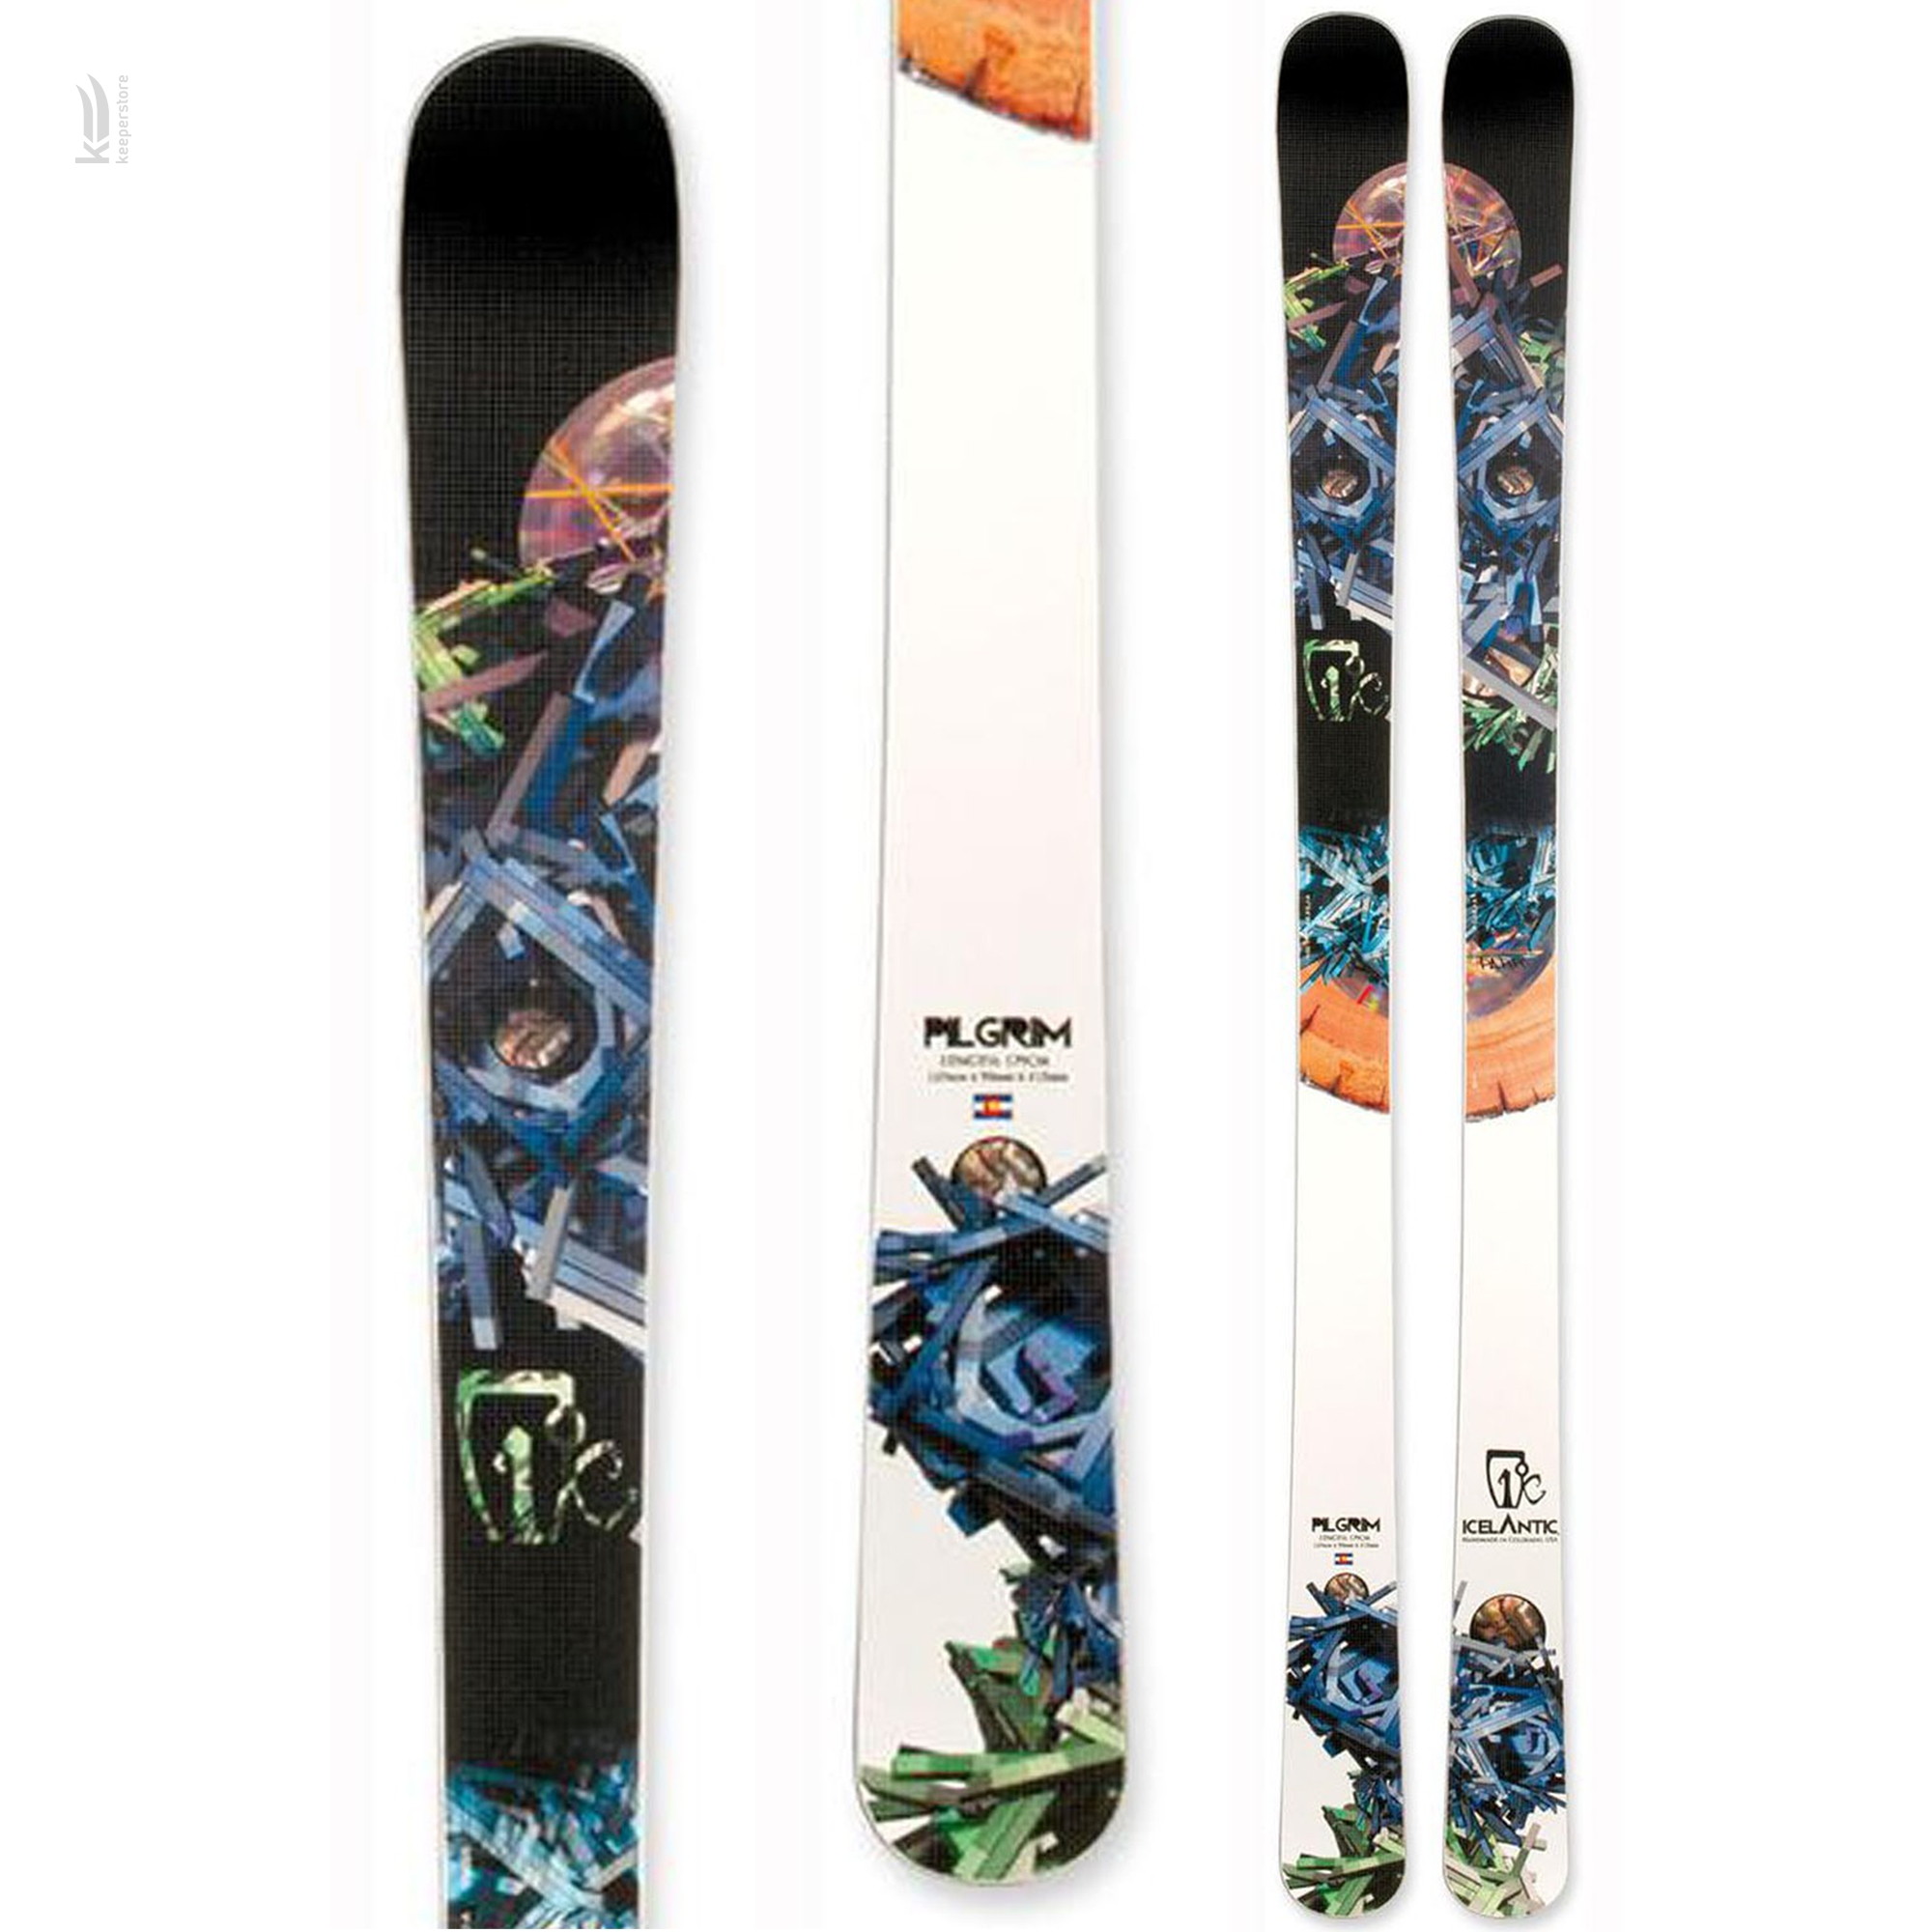 Купить лыжи для карвинга Icelantic Pilgrim SKNY 2013/2014 169cm в Киеве